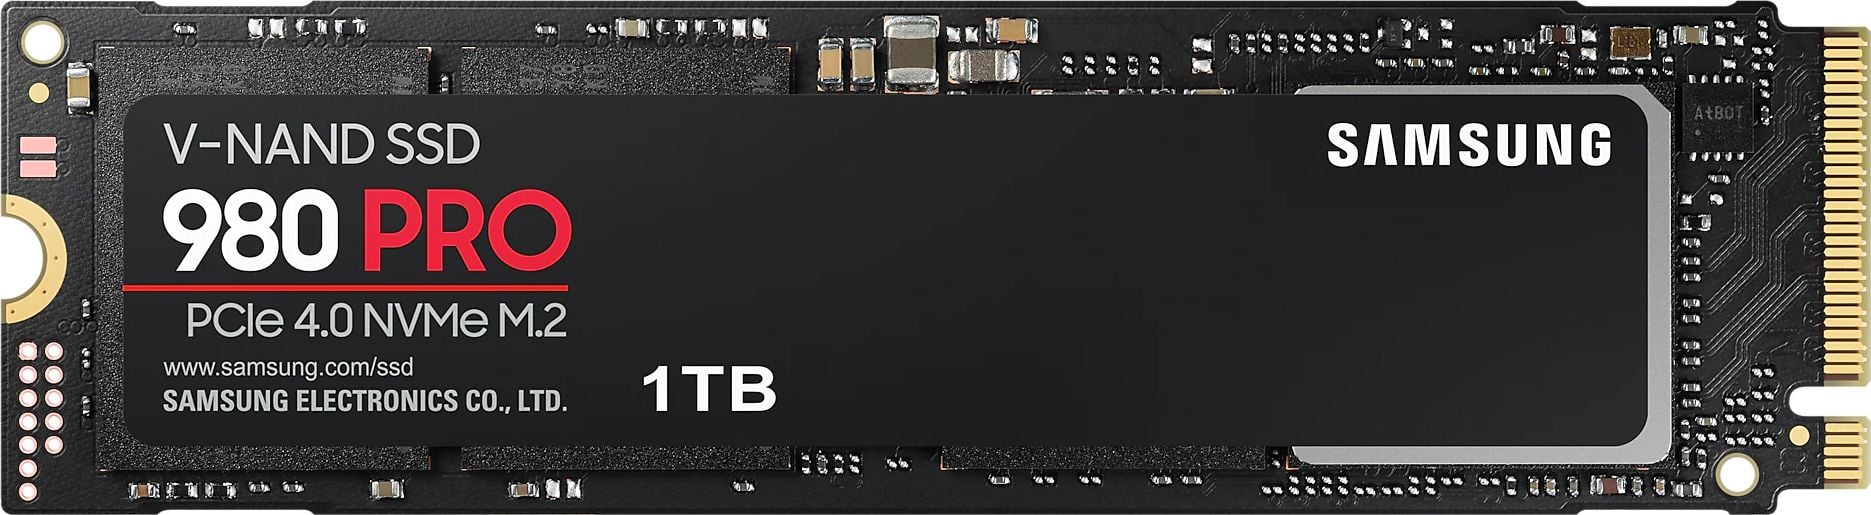 Solid-State Drive (SSD) - Solid State Drive (SSD) Samsung 980 PRO, 1TB, NVMe, M.2.